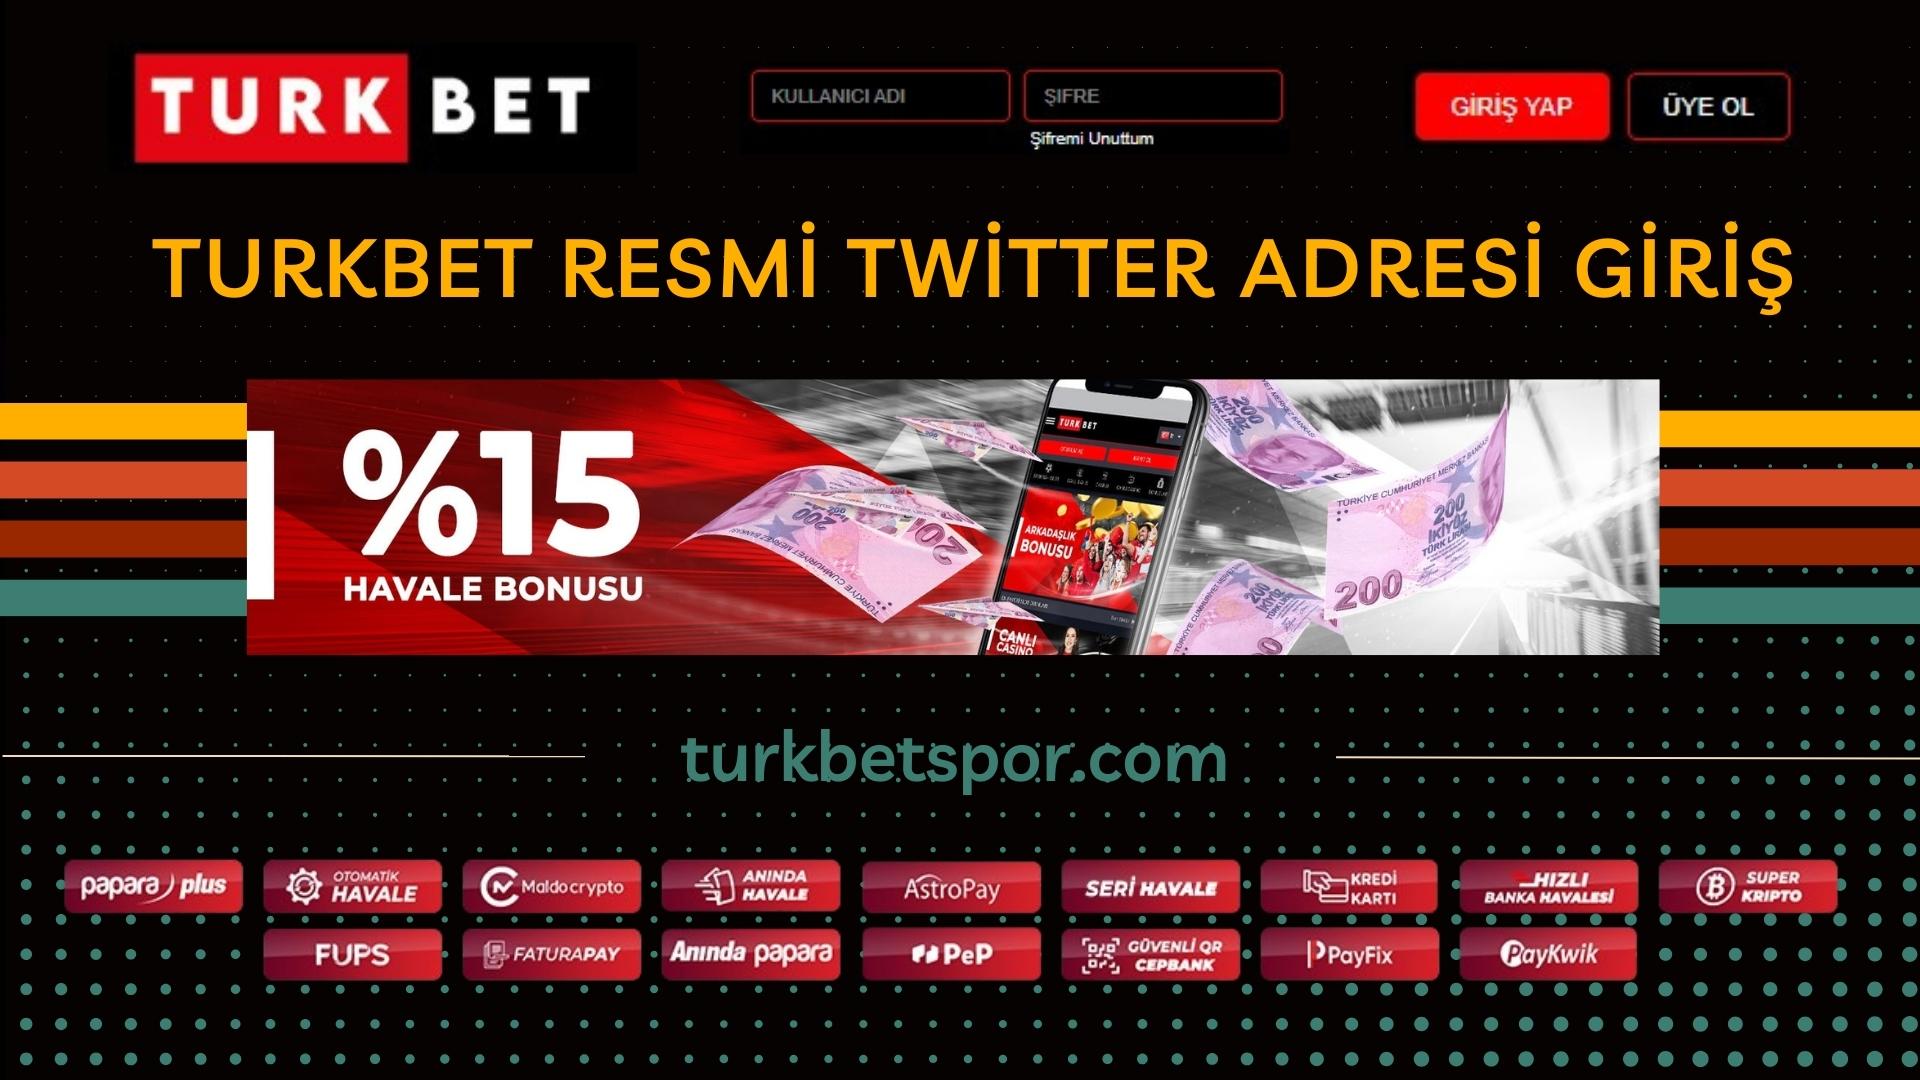 Turkbet Resmi Twitter Adresi Giriş